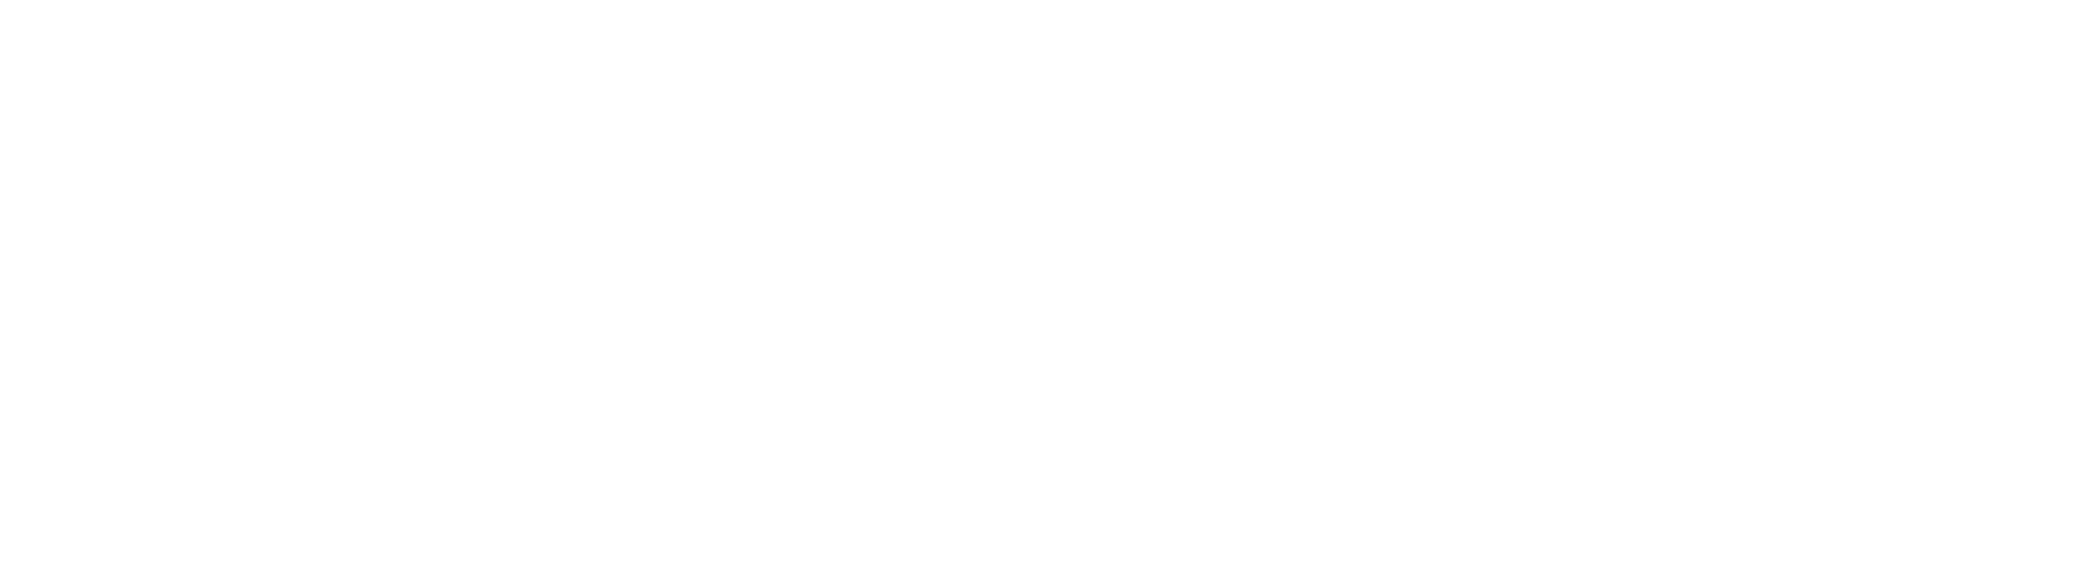 The CityReporter logo in white